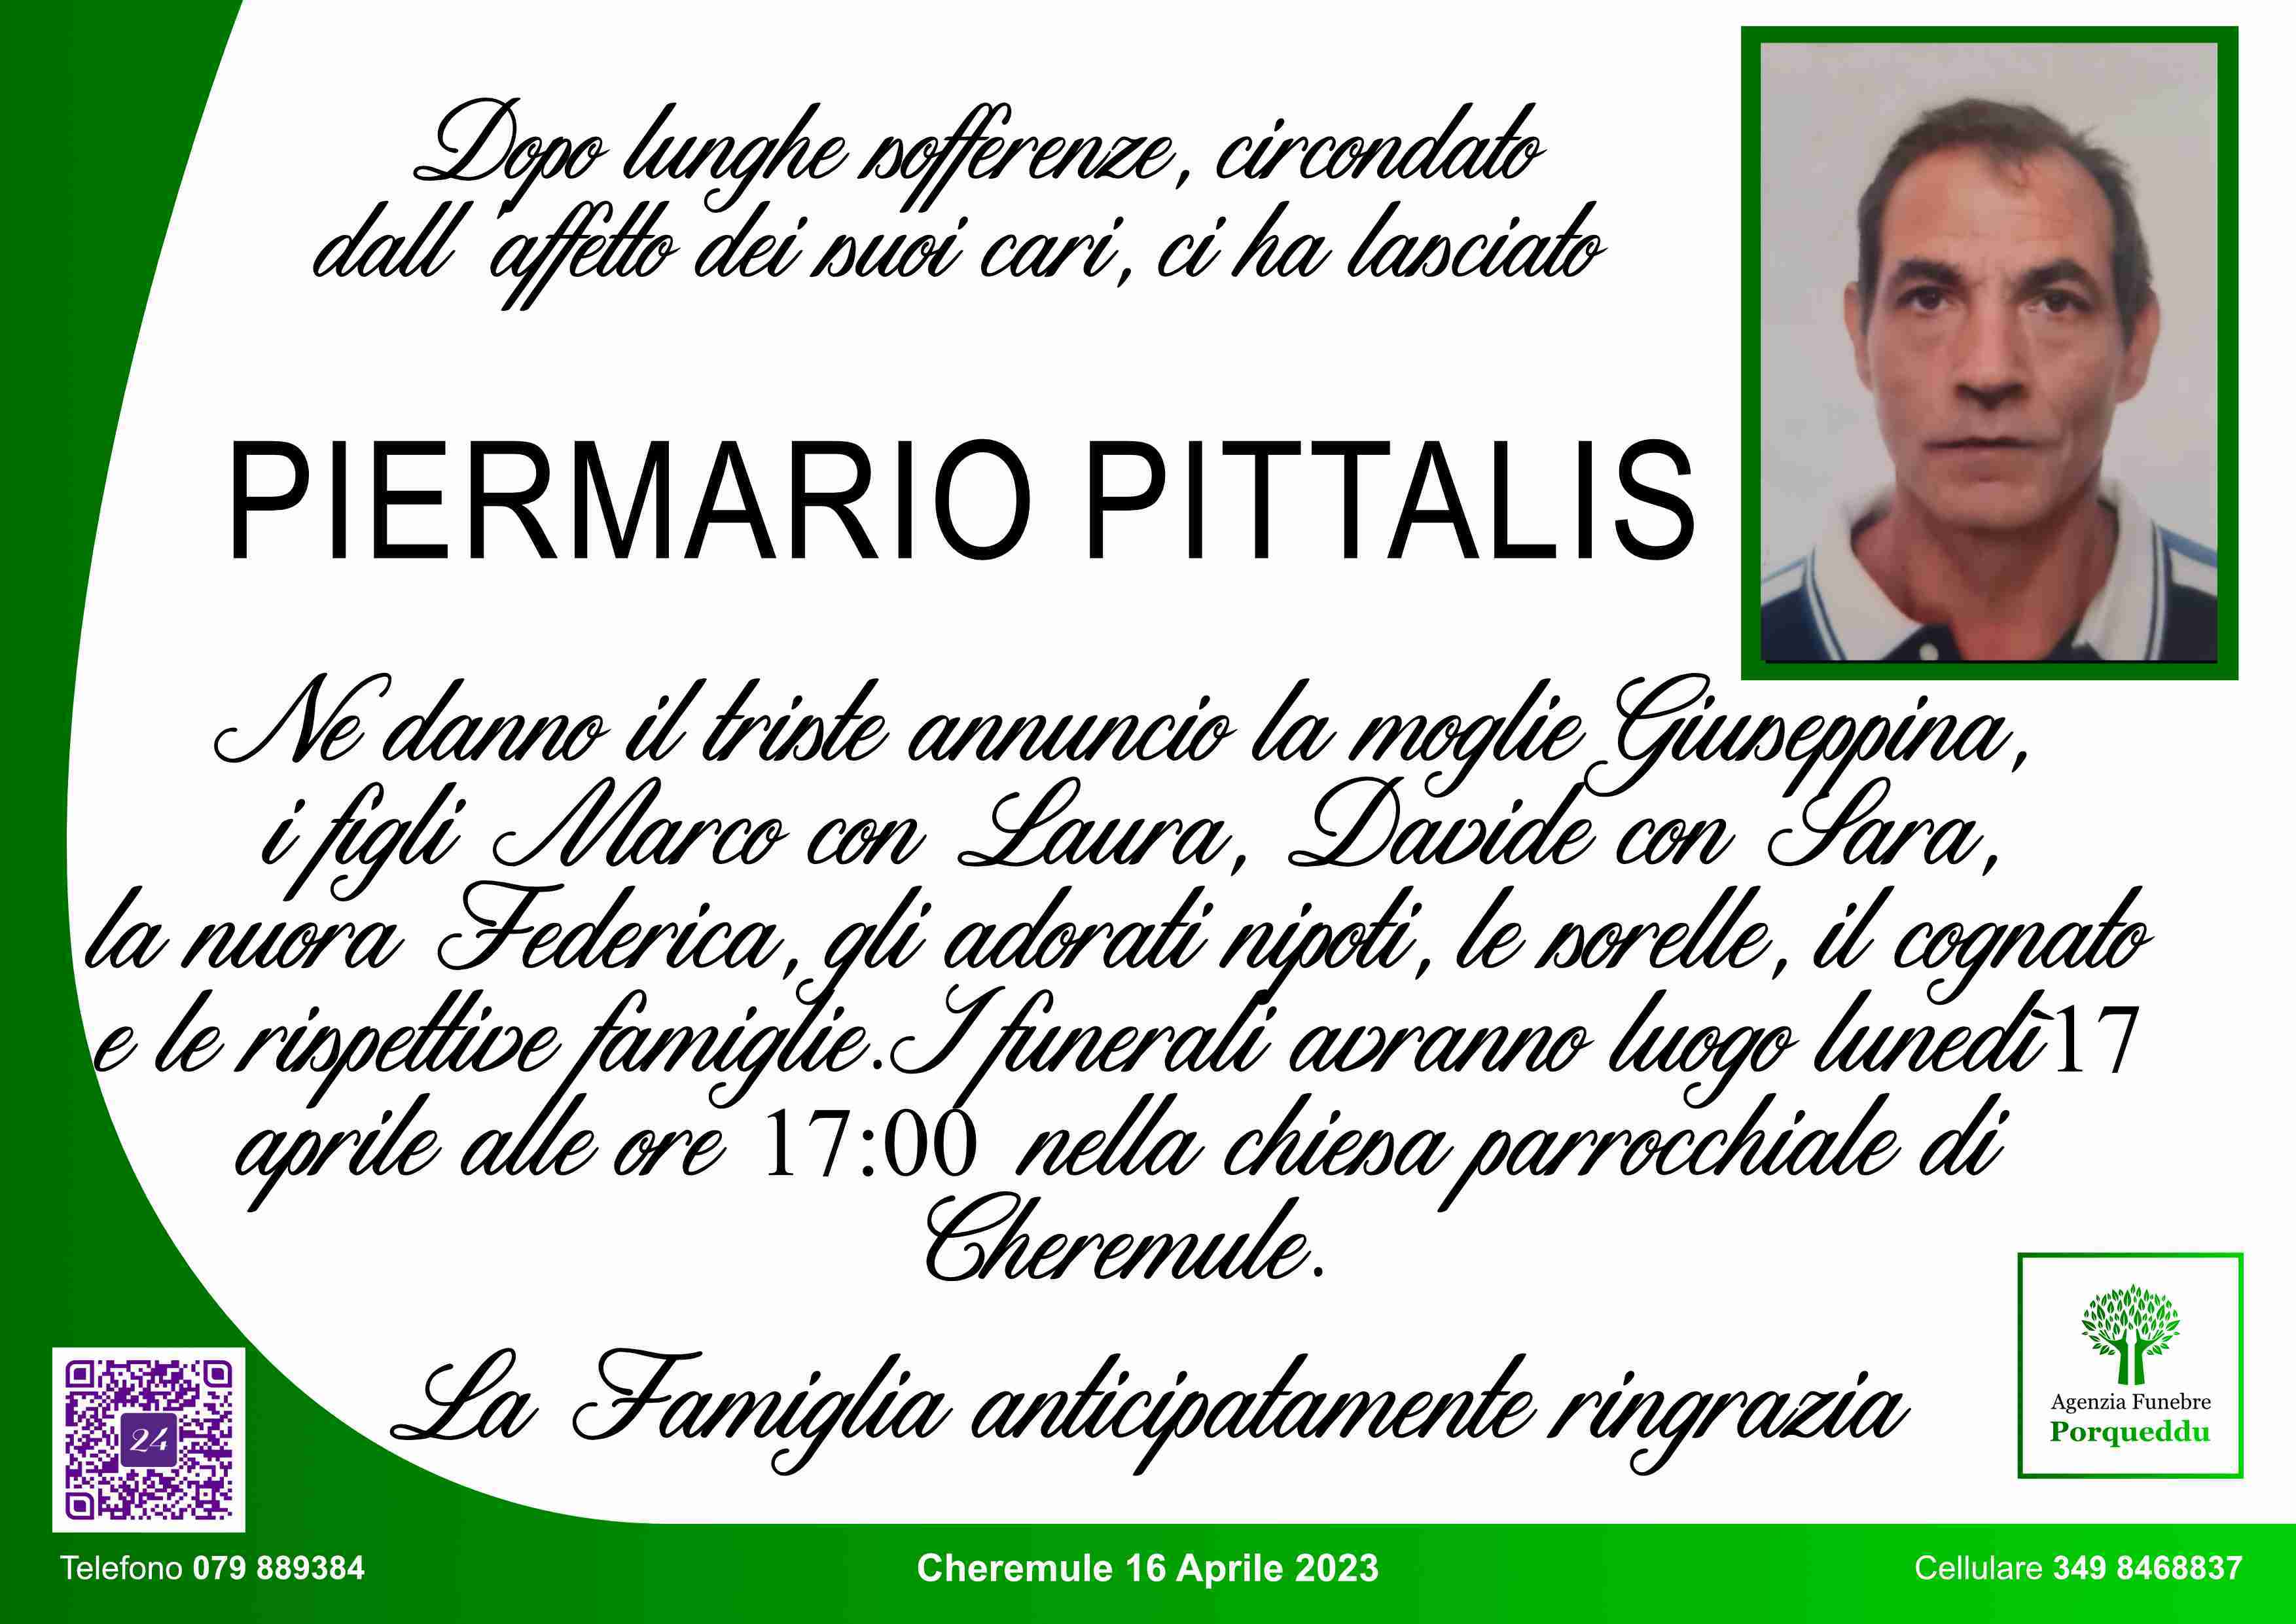 Piermario Pittalis